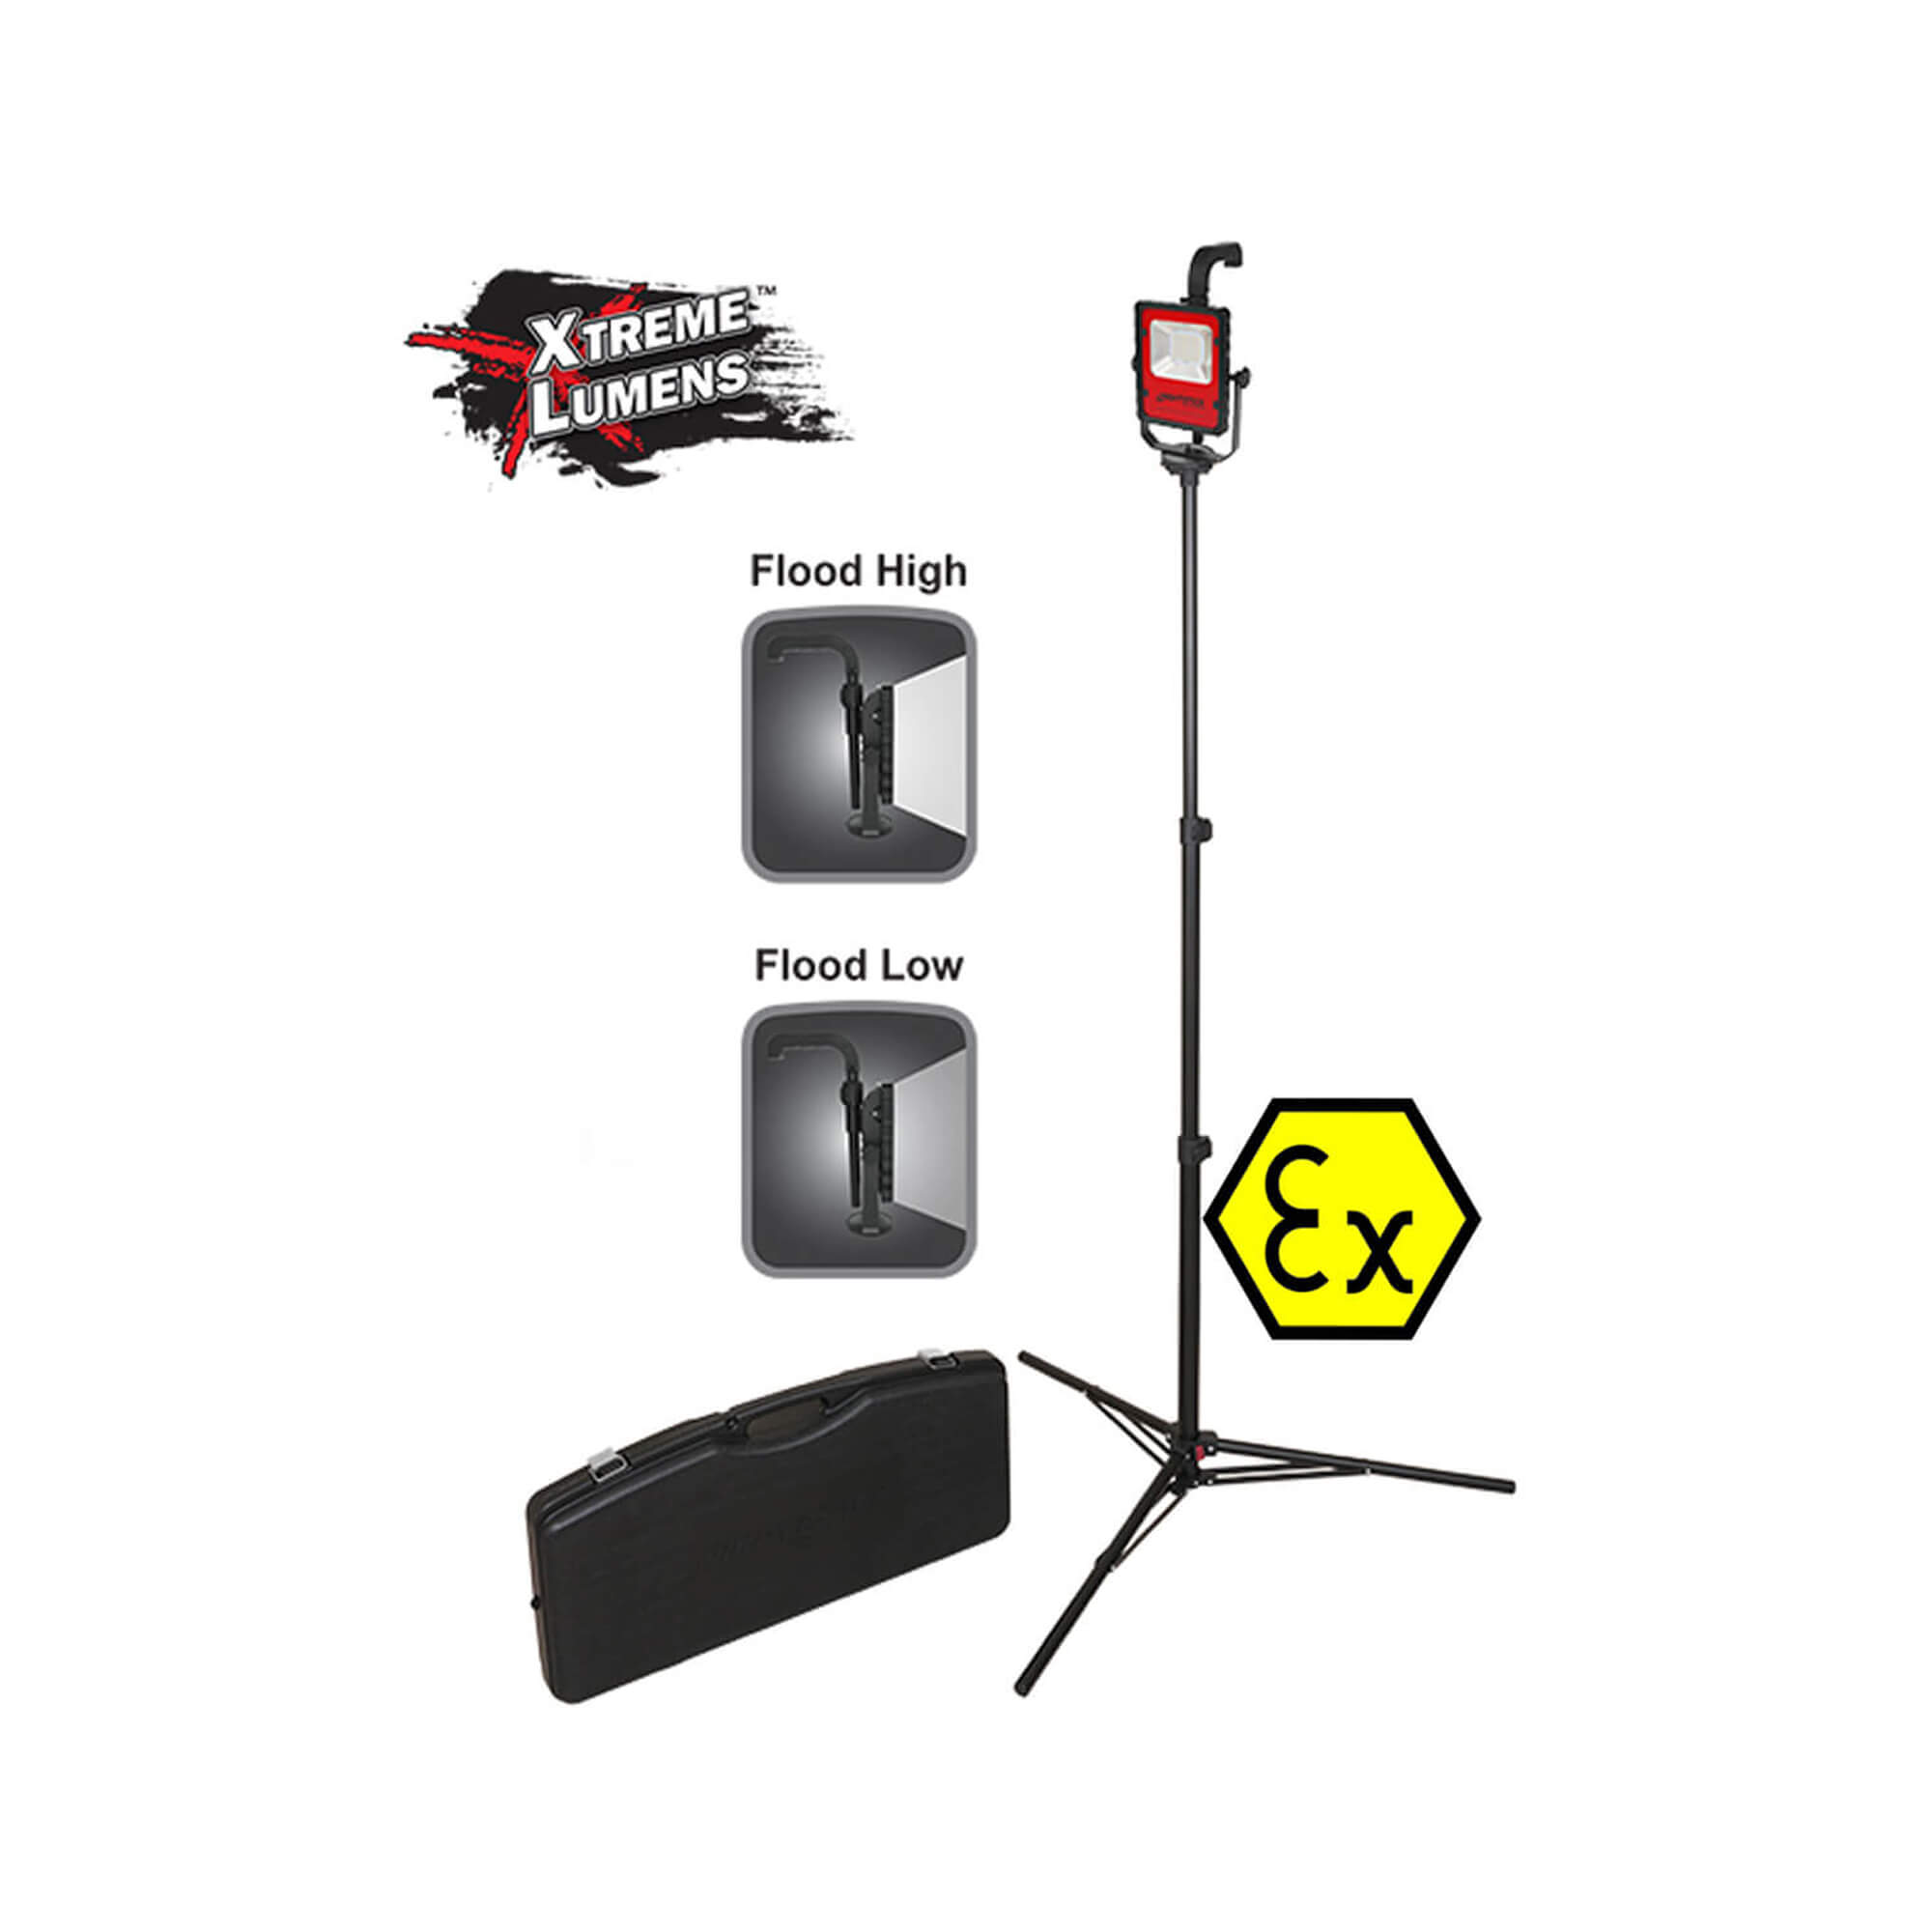 Svjetiljka - reflektor za vatrogasce Nightstick XPR-5590RCX u EX izvedbi